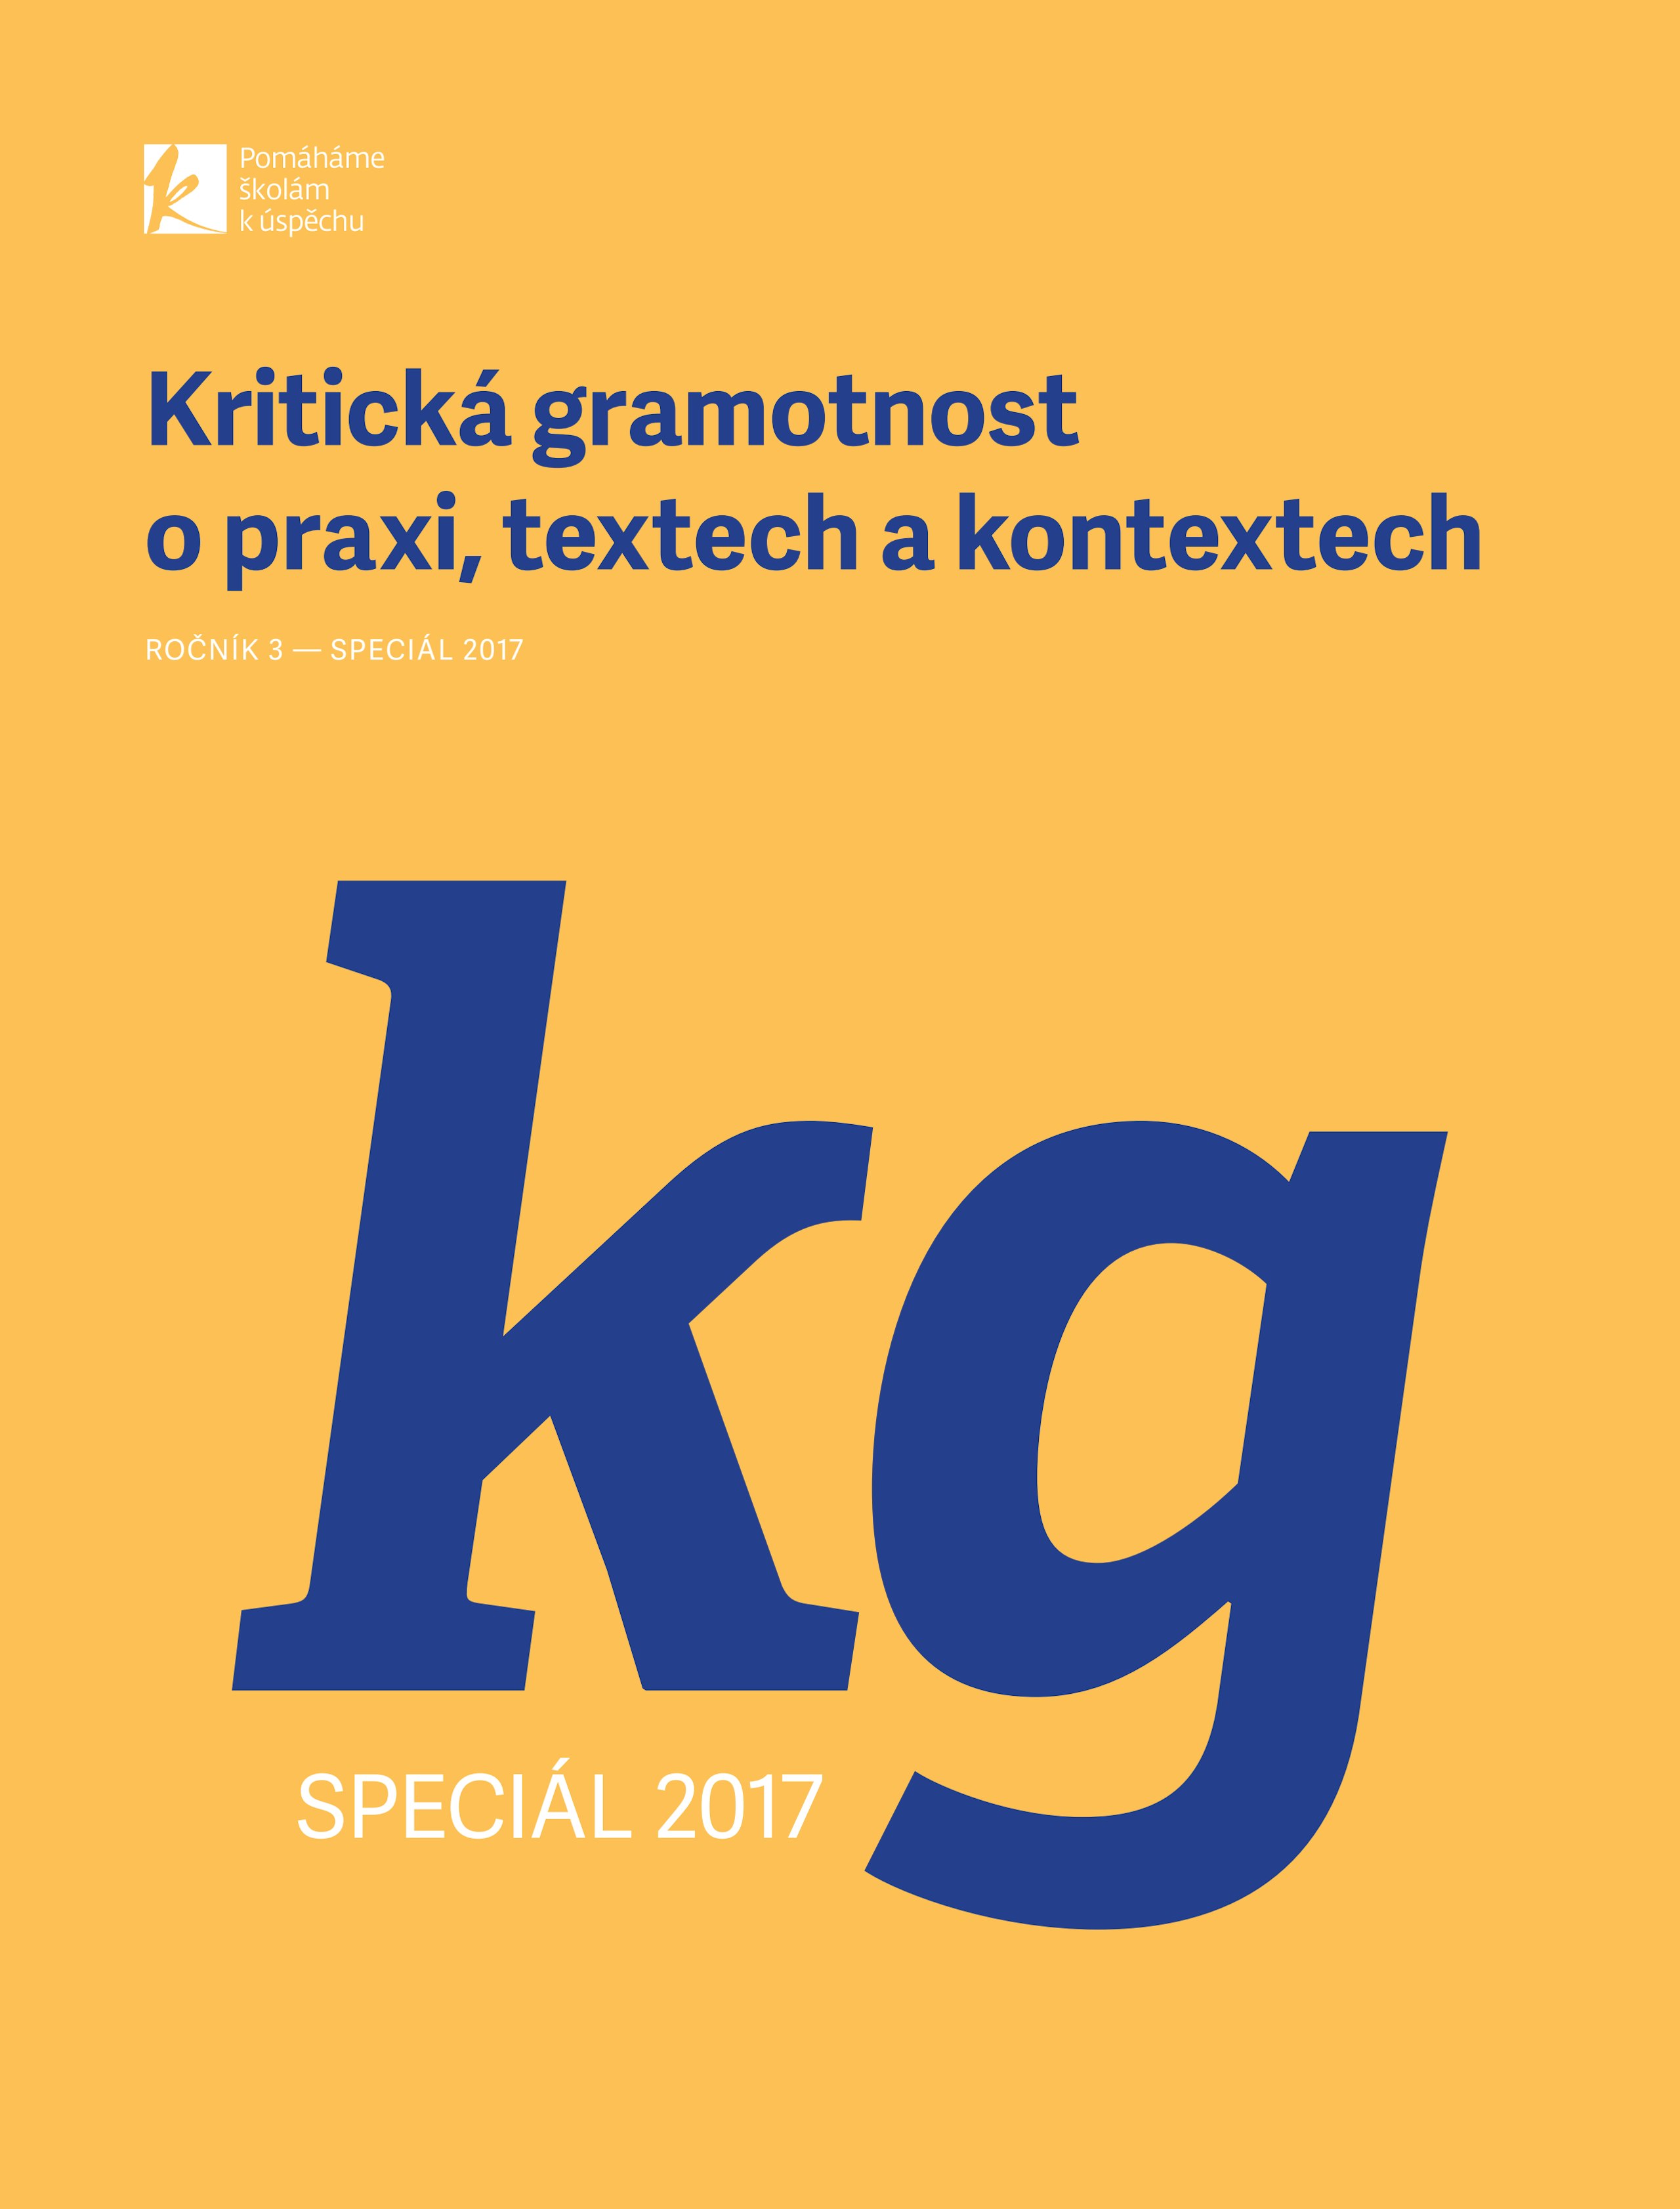 kriticka-gramotnost-casopis-special-2017-w.pdf